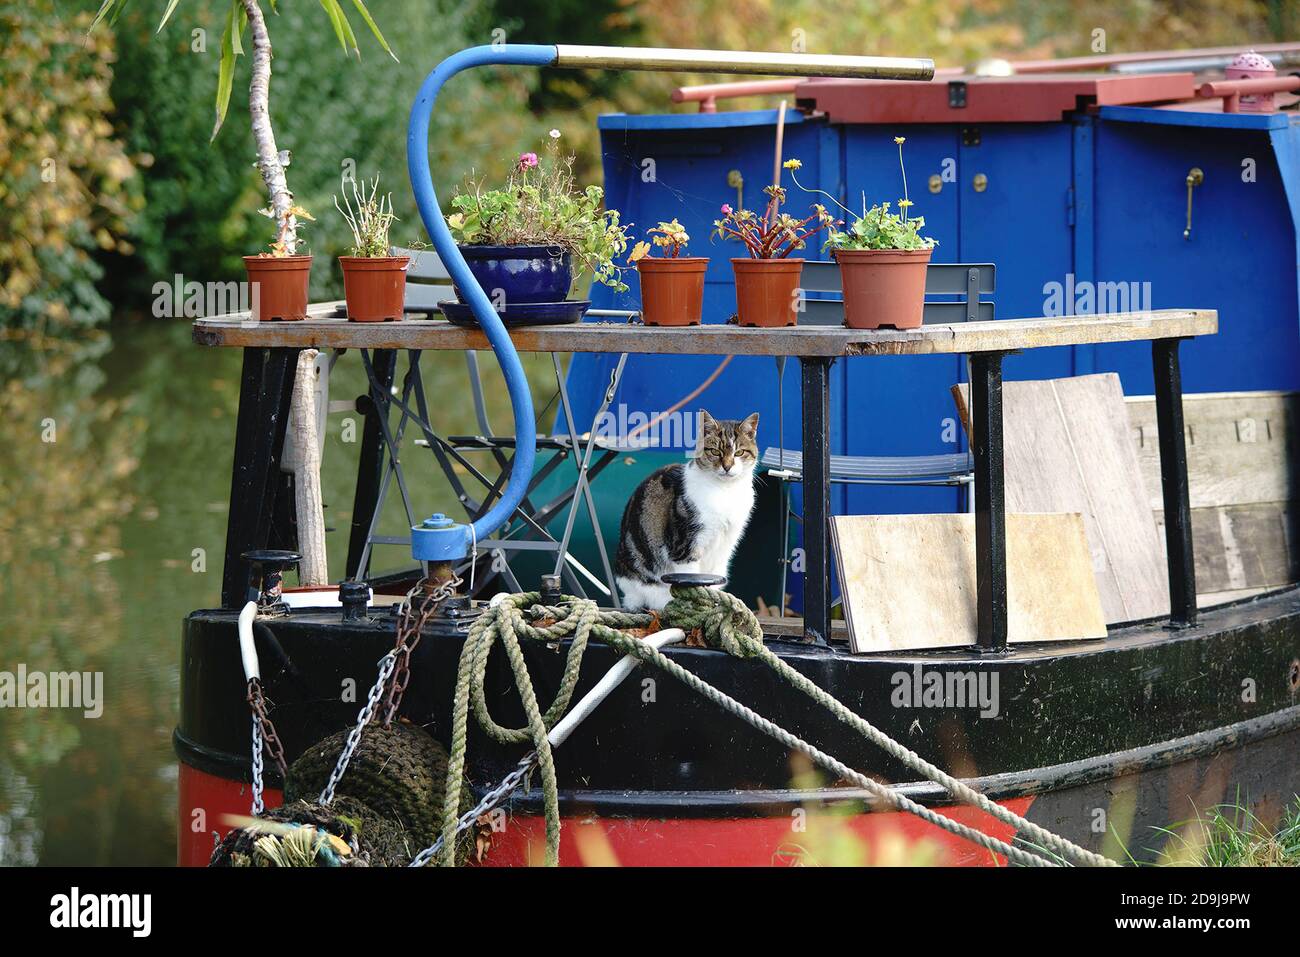 Eine tabby Katze umgeben von Pflanzen in Töpfen, bewacht ein Kanalboot. Stockfoto